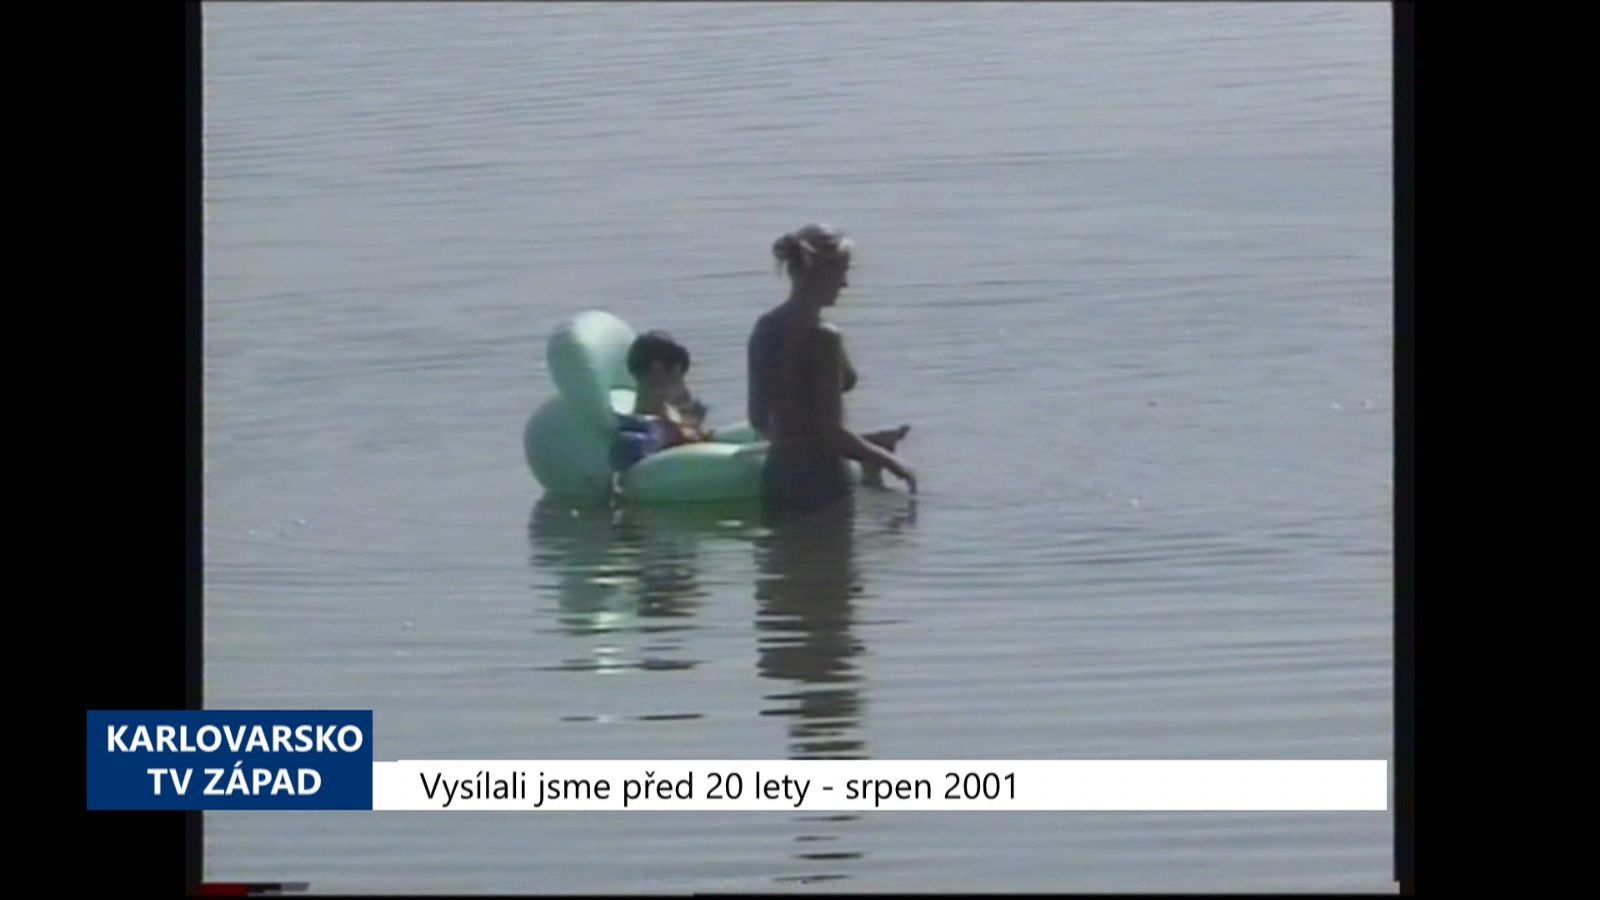 2001 – Cheb: Na Jesenici se zhoršuje kvalita vody (TV Západ)